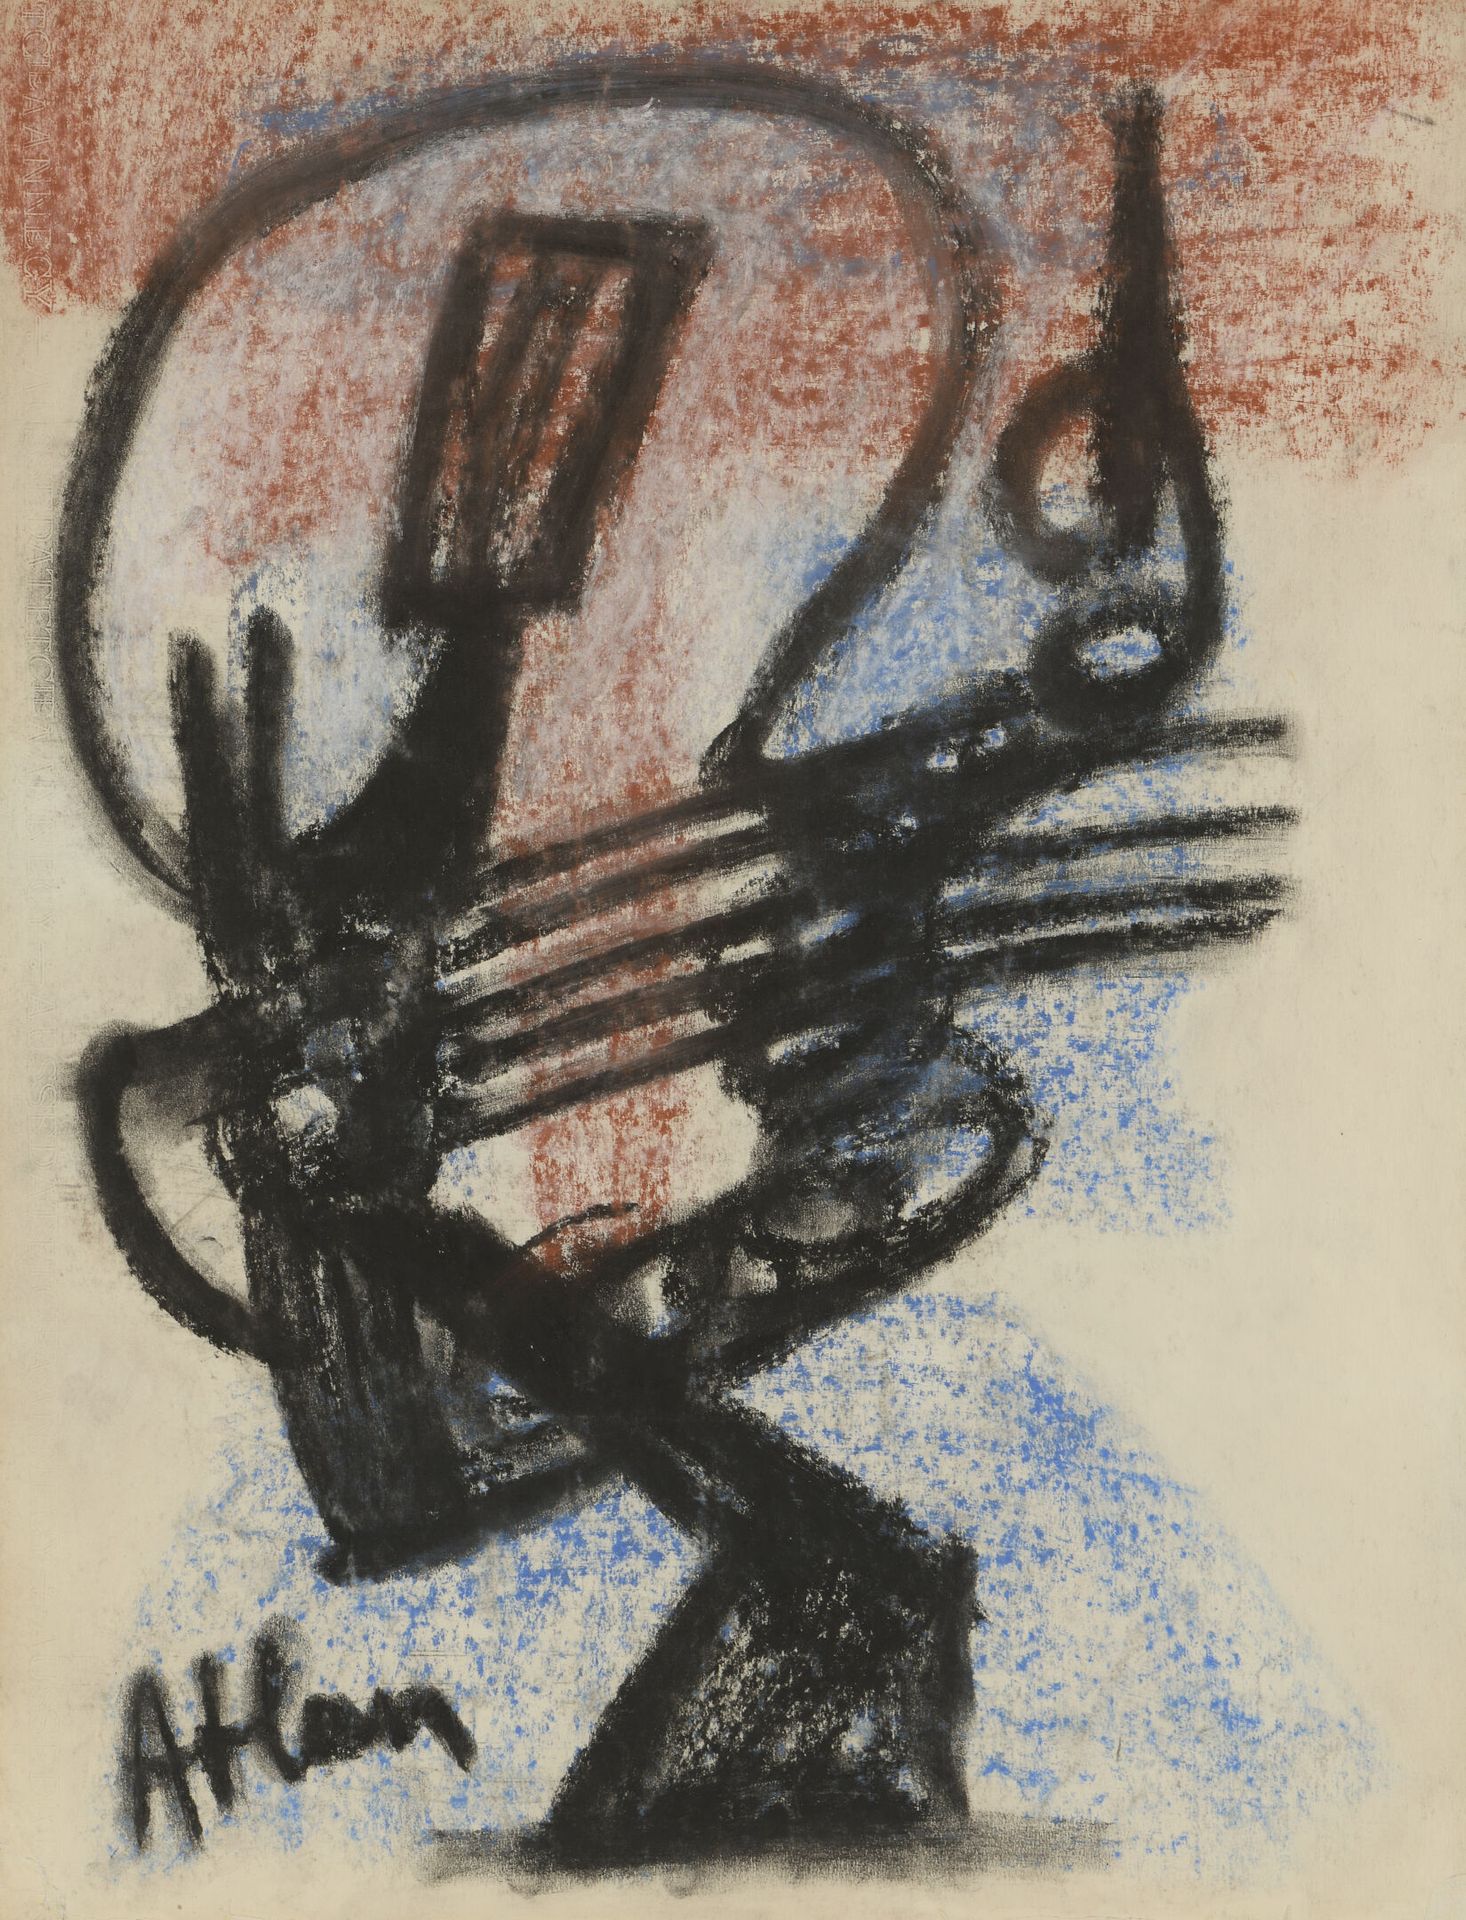 Null 让-米歇尔-阿特兰(1913-1960)

无题》，1954年

粉彩画，左下角有签名

H.65.5厘米 - 宽50厘米

下部有轻微的折痕，右下角&hellip;